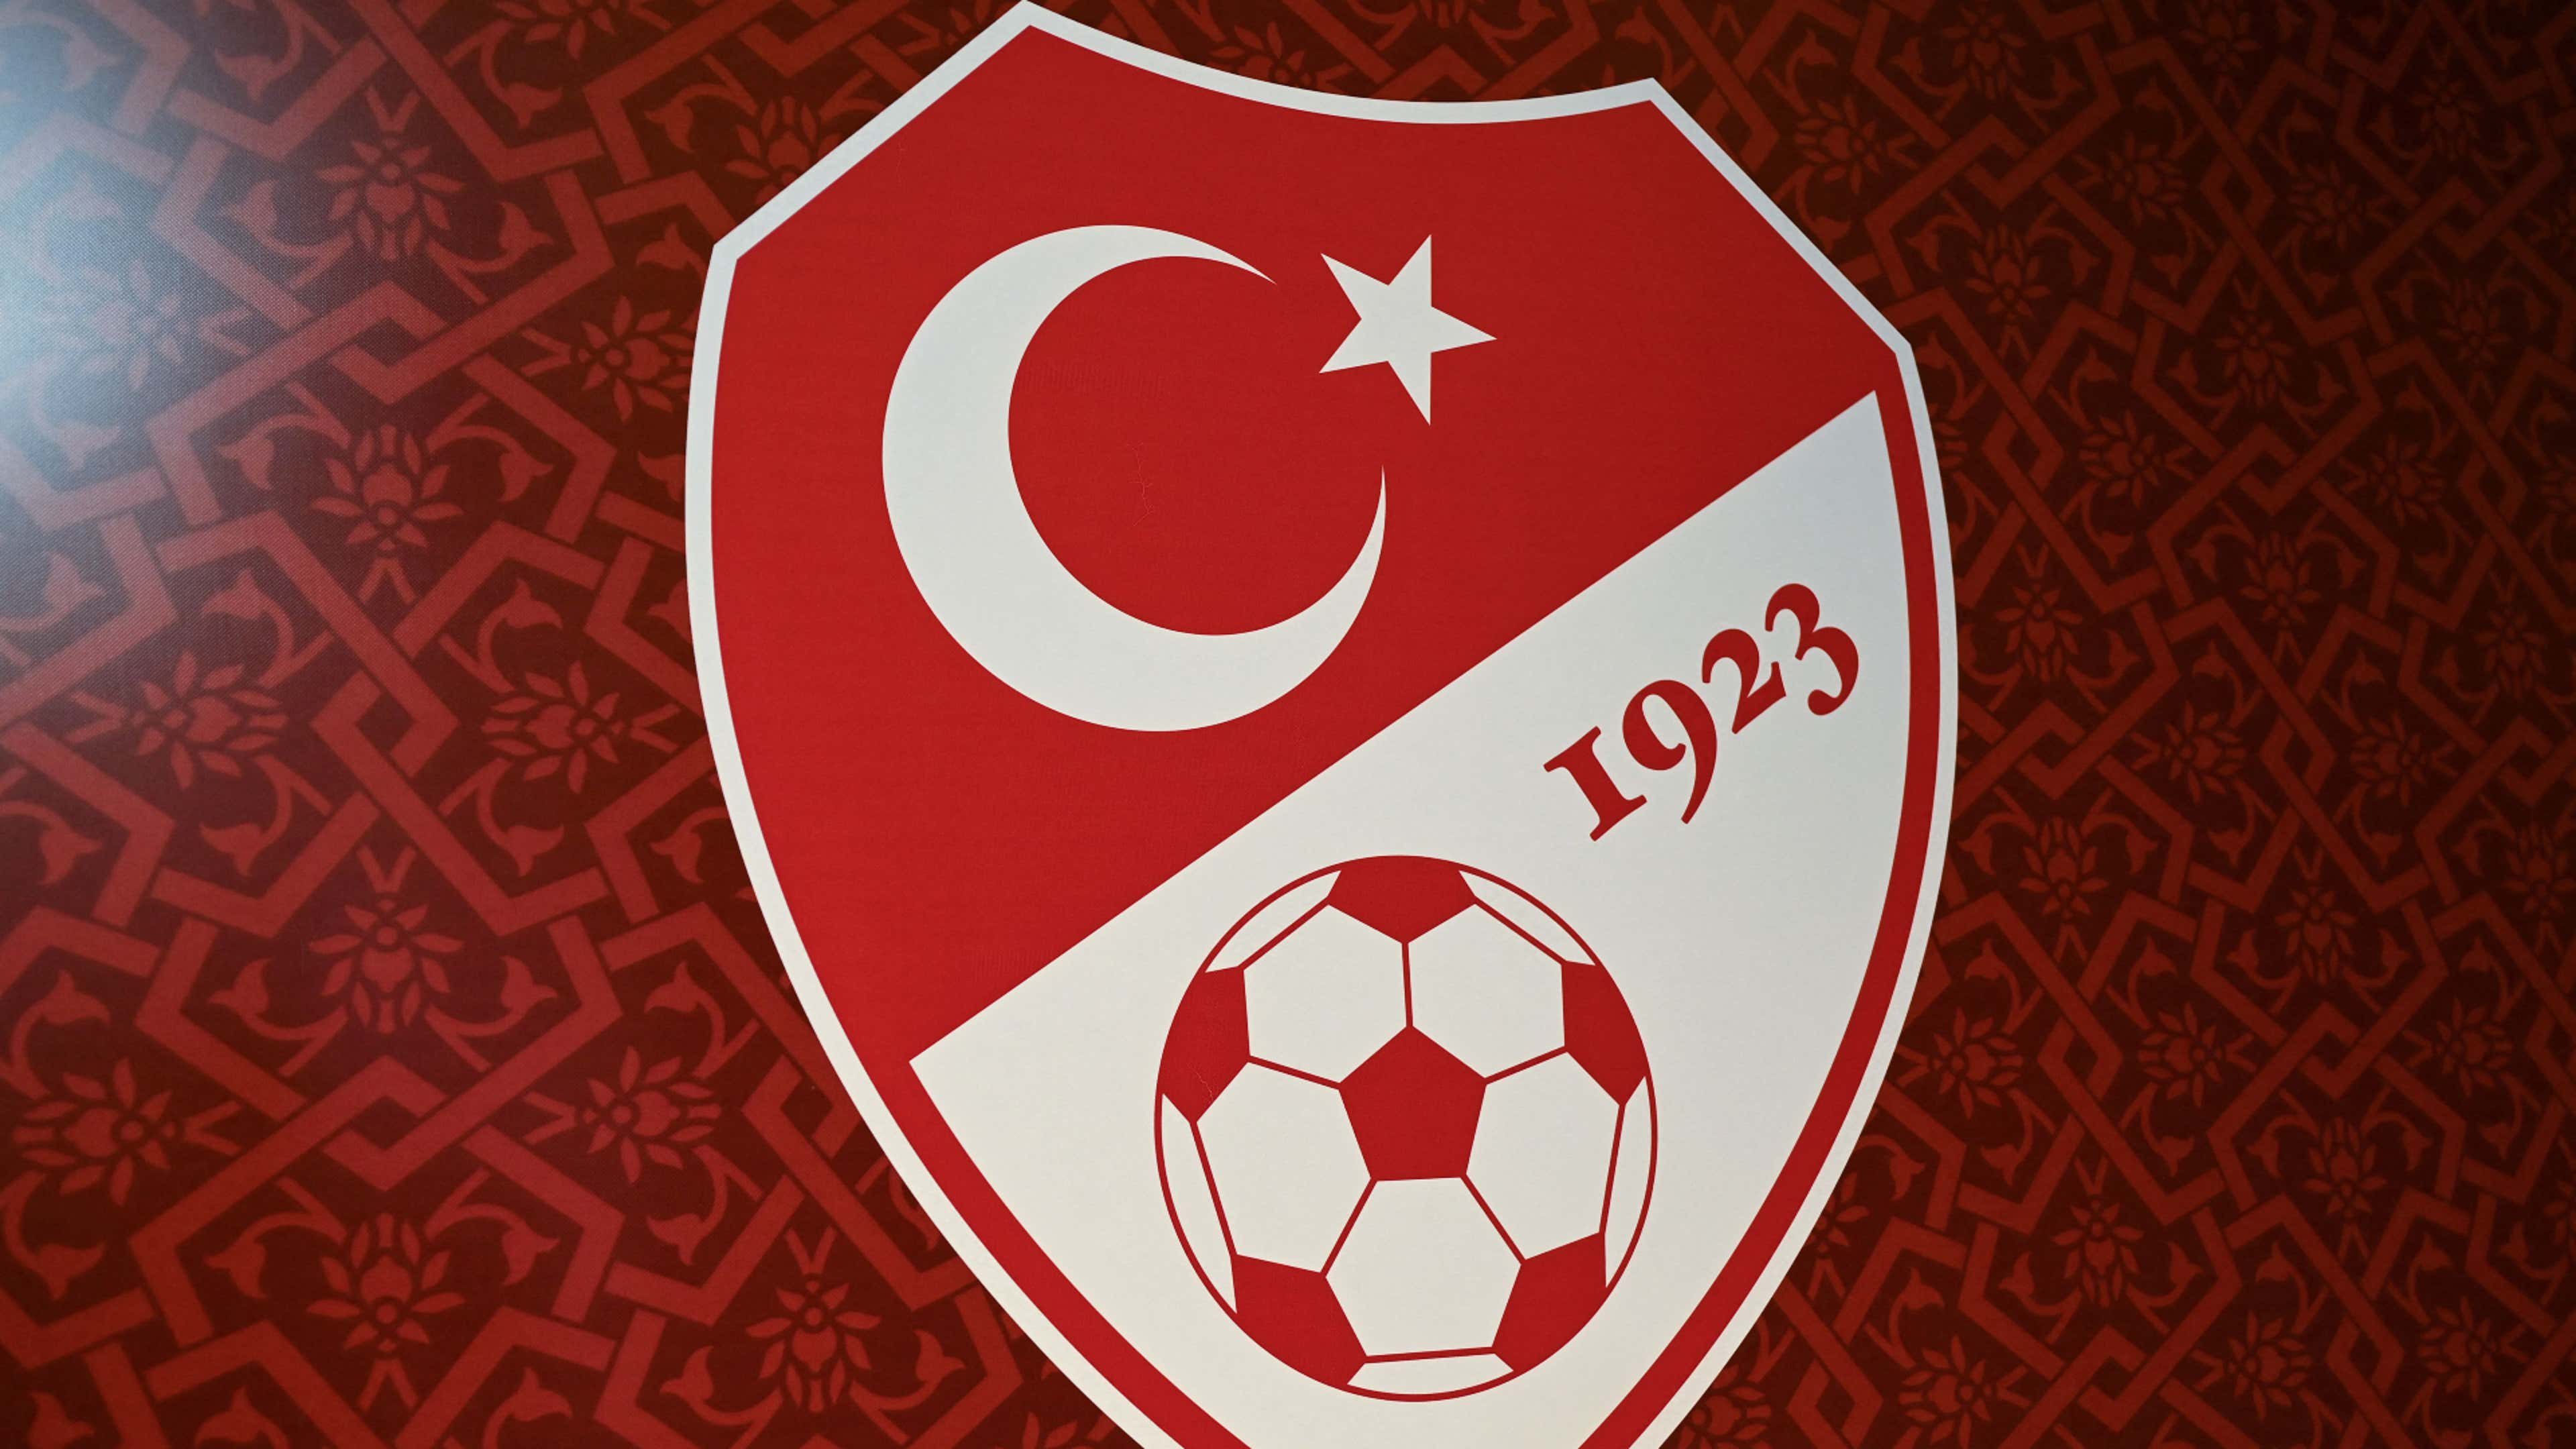 Turkey Football Federation